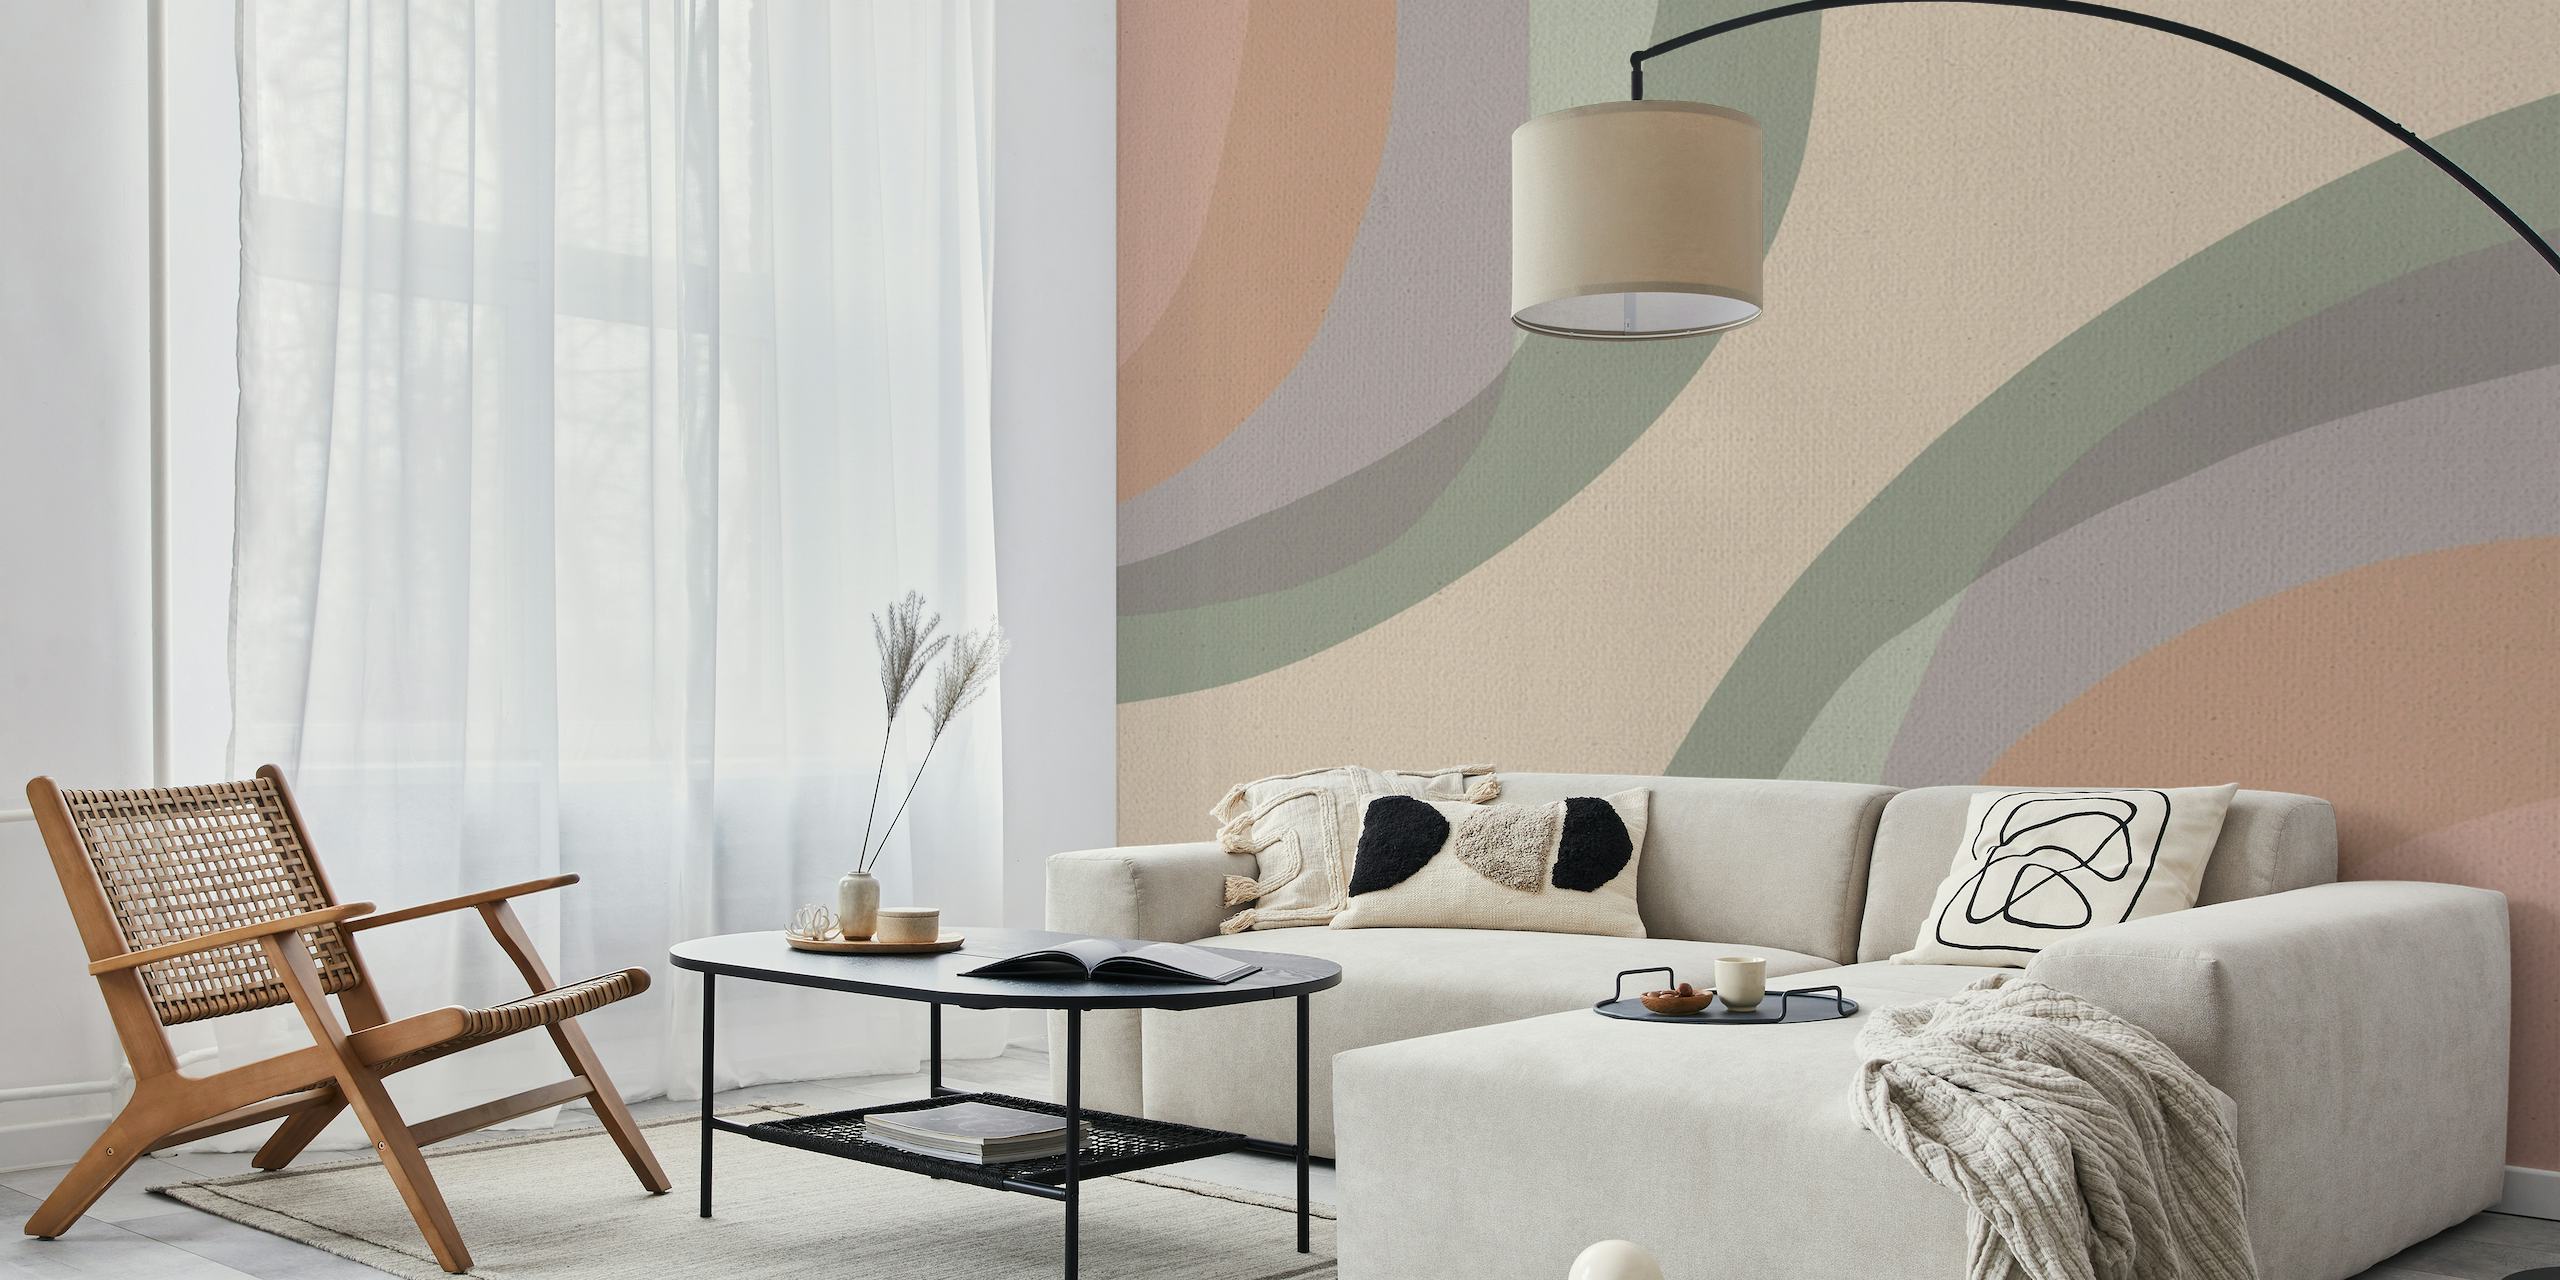 Apstraktni mural pastelnih duginih boja s mekim lukovima u minimalističkom dizajnu